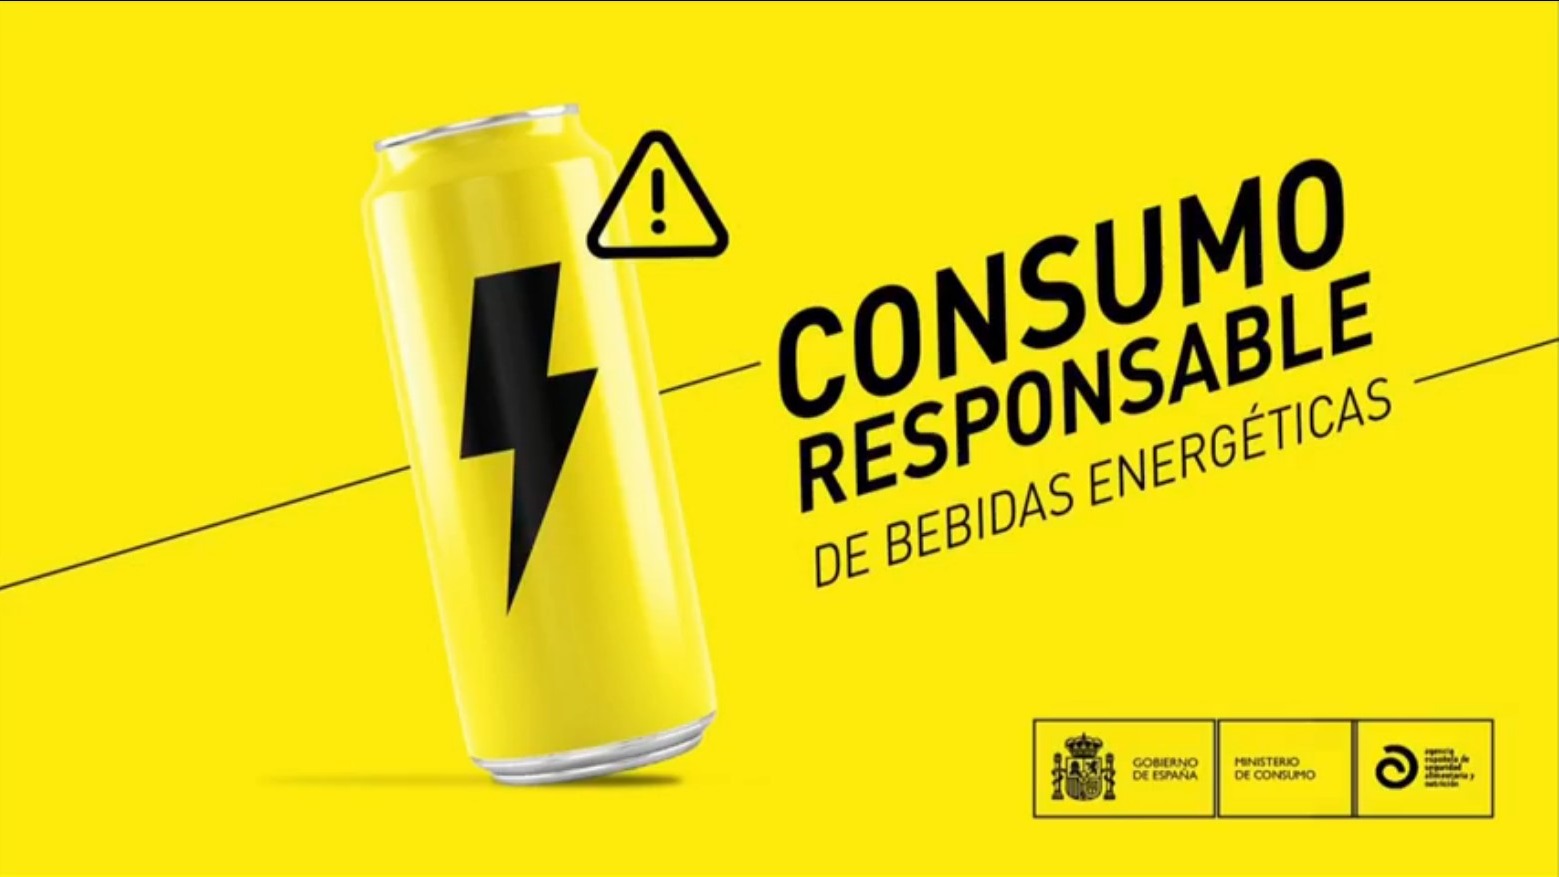 El Ministro de Consumo presenta el informe del Comité Científico de la AESAN sobre bebidas energéticas.